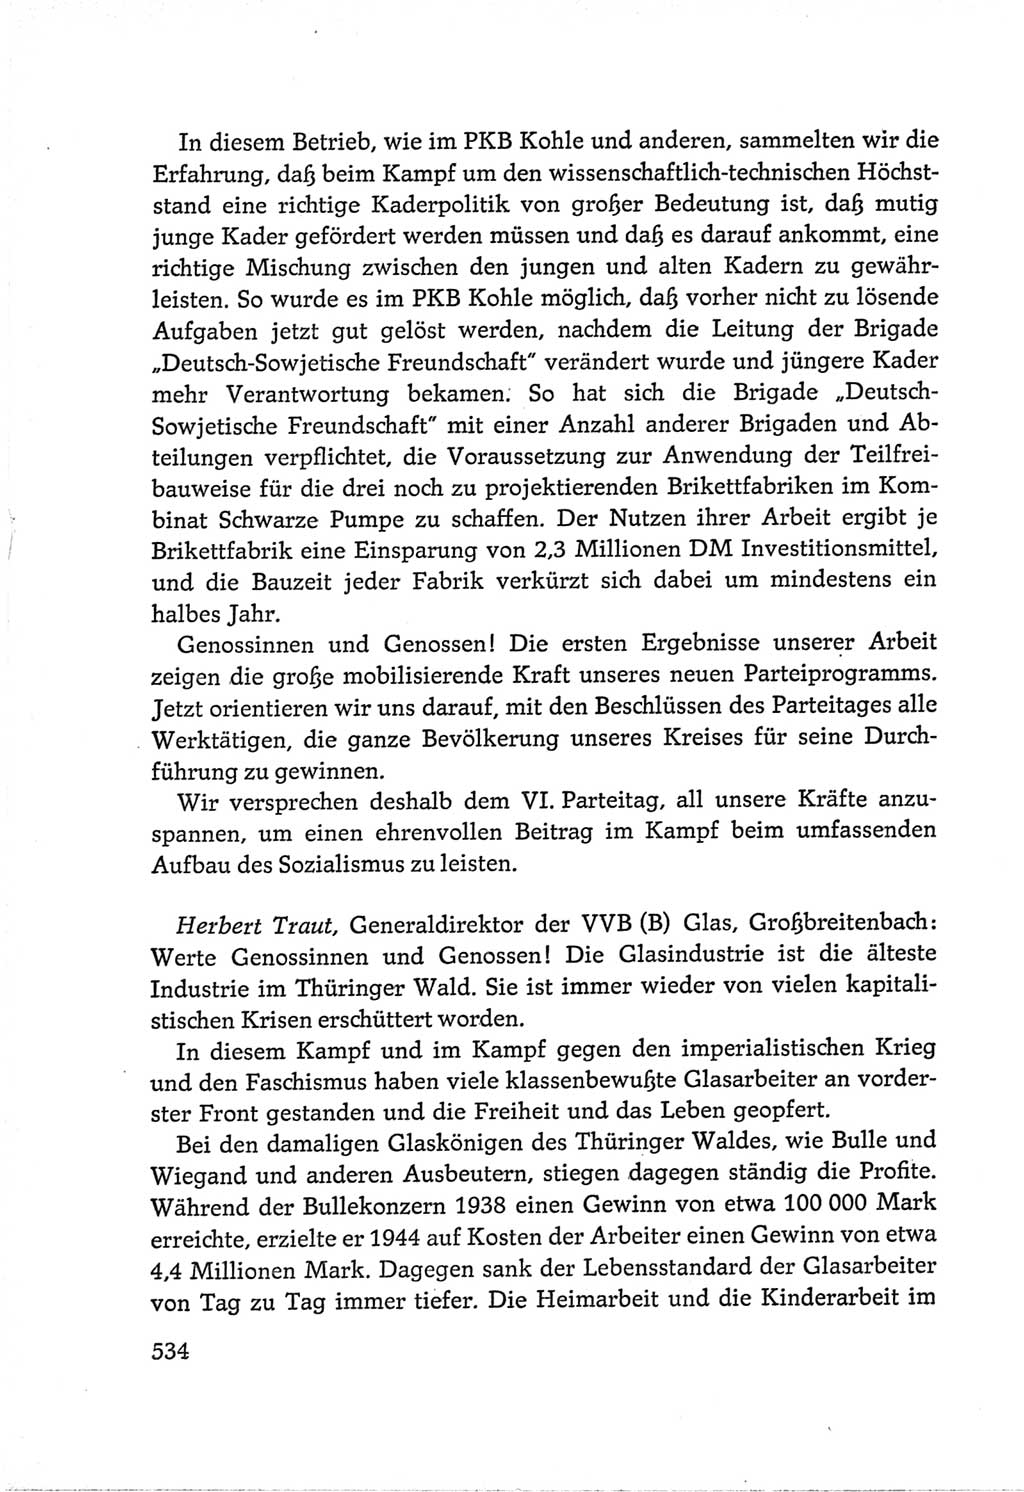 Protokoll der Verhandlungen des Ⅵ. Parteitages der Sozialistischen Einheitspartei Deutschlands (SED) [Deutsche Demokratische Republik (DDR)] 1963, Band Ⅲ, Seite 534 (Prot. Verh. Ⅵ. PT SED DDR 1963, Bd. Ⅲ, S. 534)